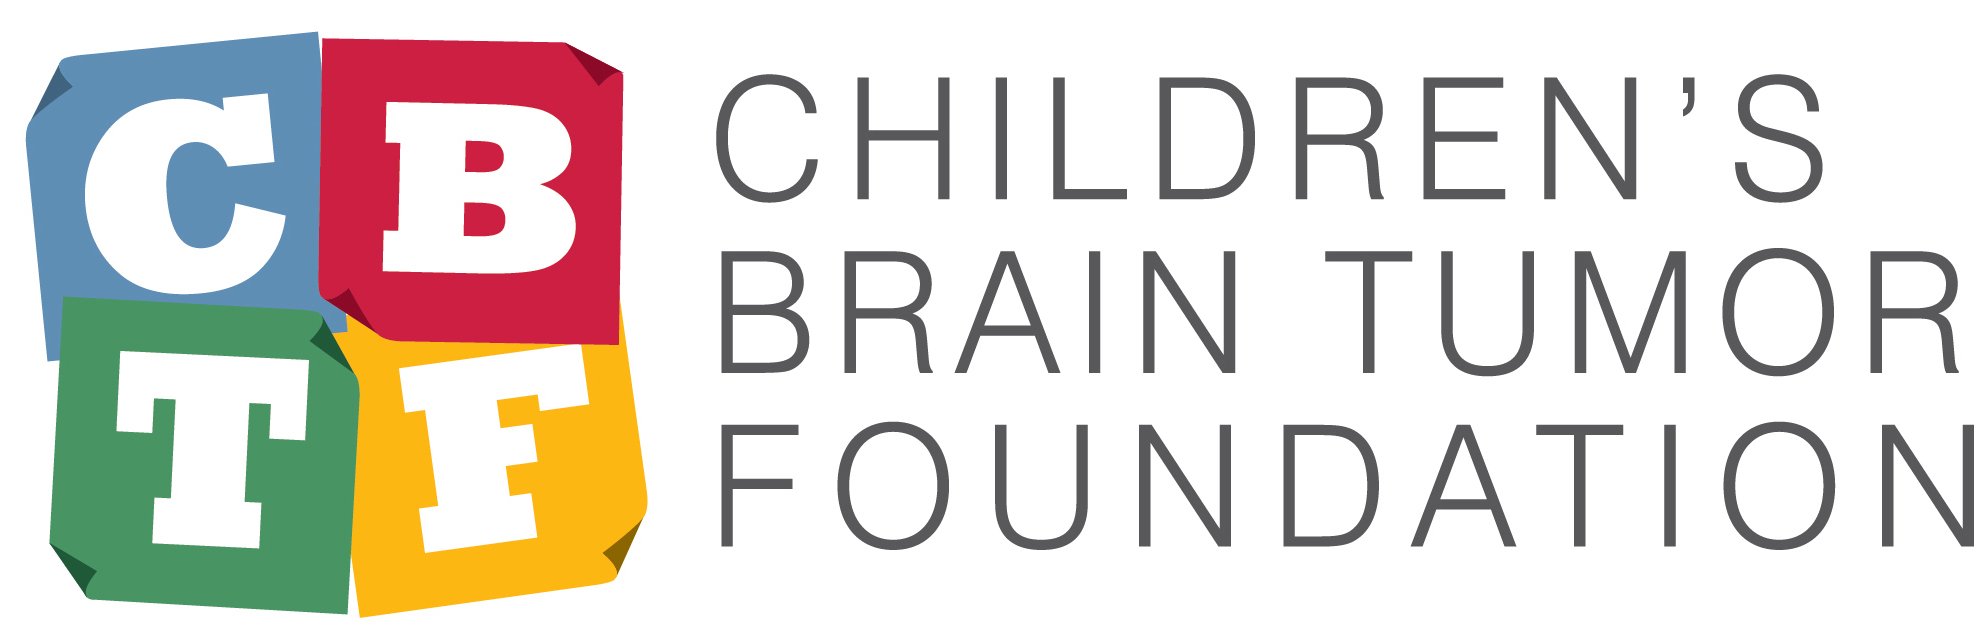 Children_s-Brain-Tumor-Foundation-color-logo1